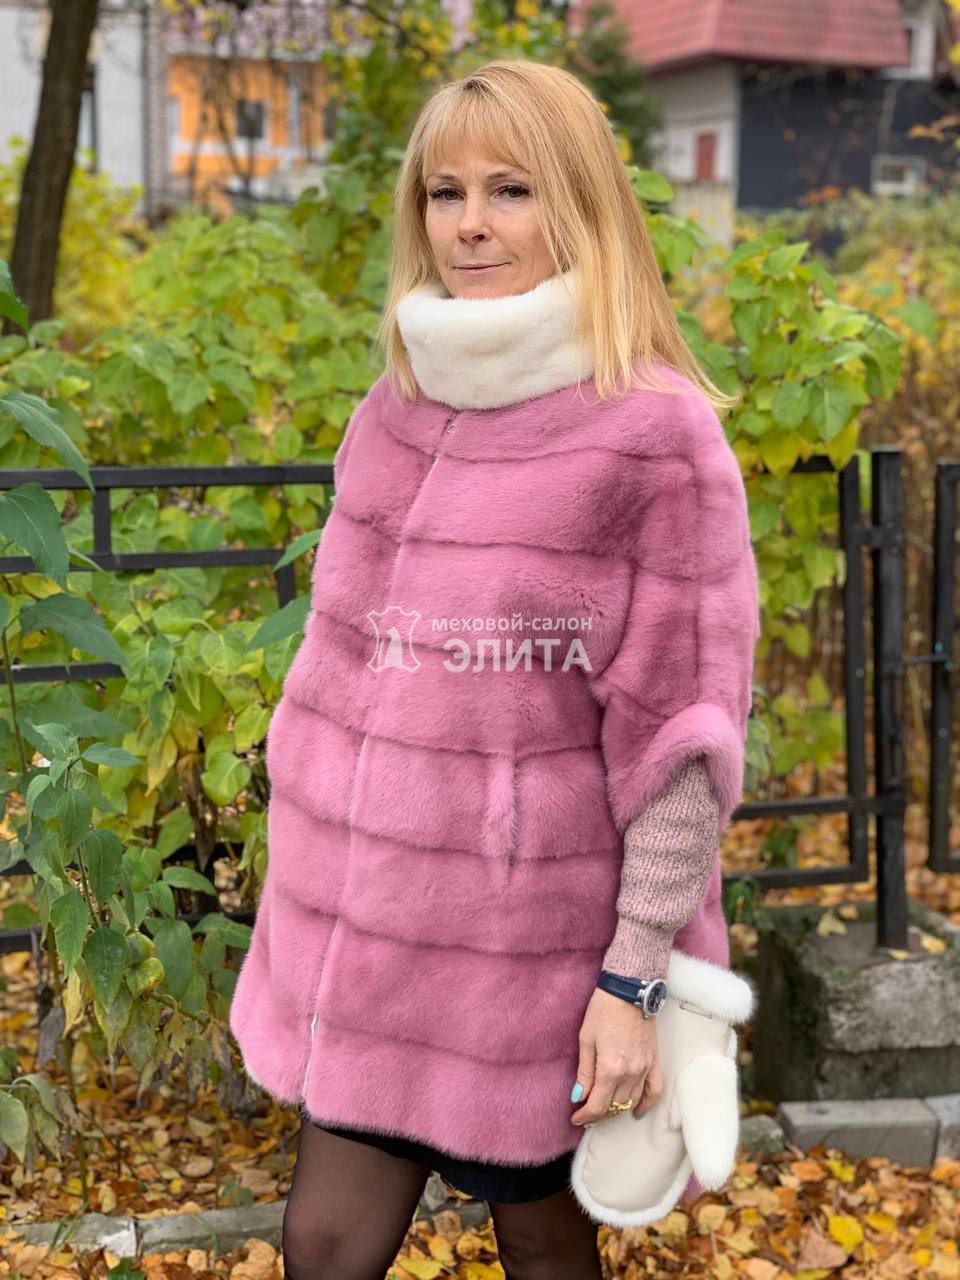 Норковый свитер S-1705 р-р 42-52., цена 62850 рублей в интернет-магазине кожи и меха ЭЛИТА. Вид 2